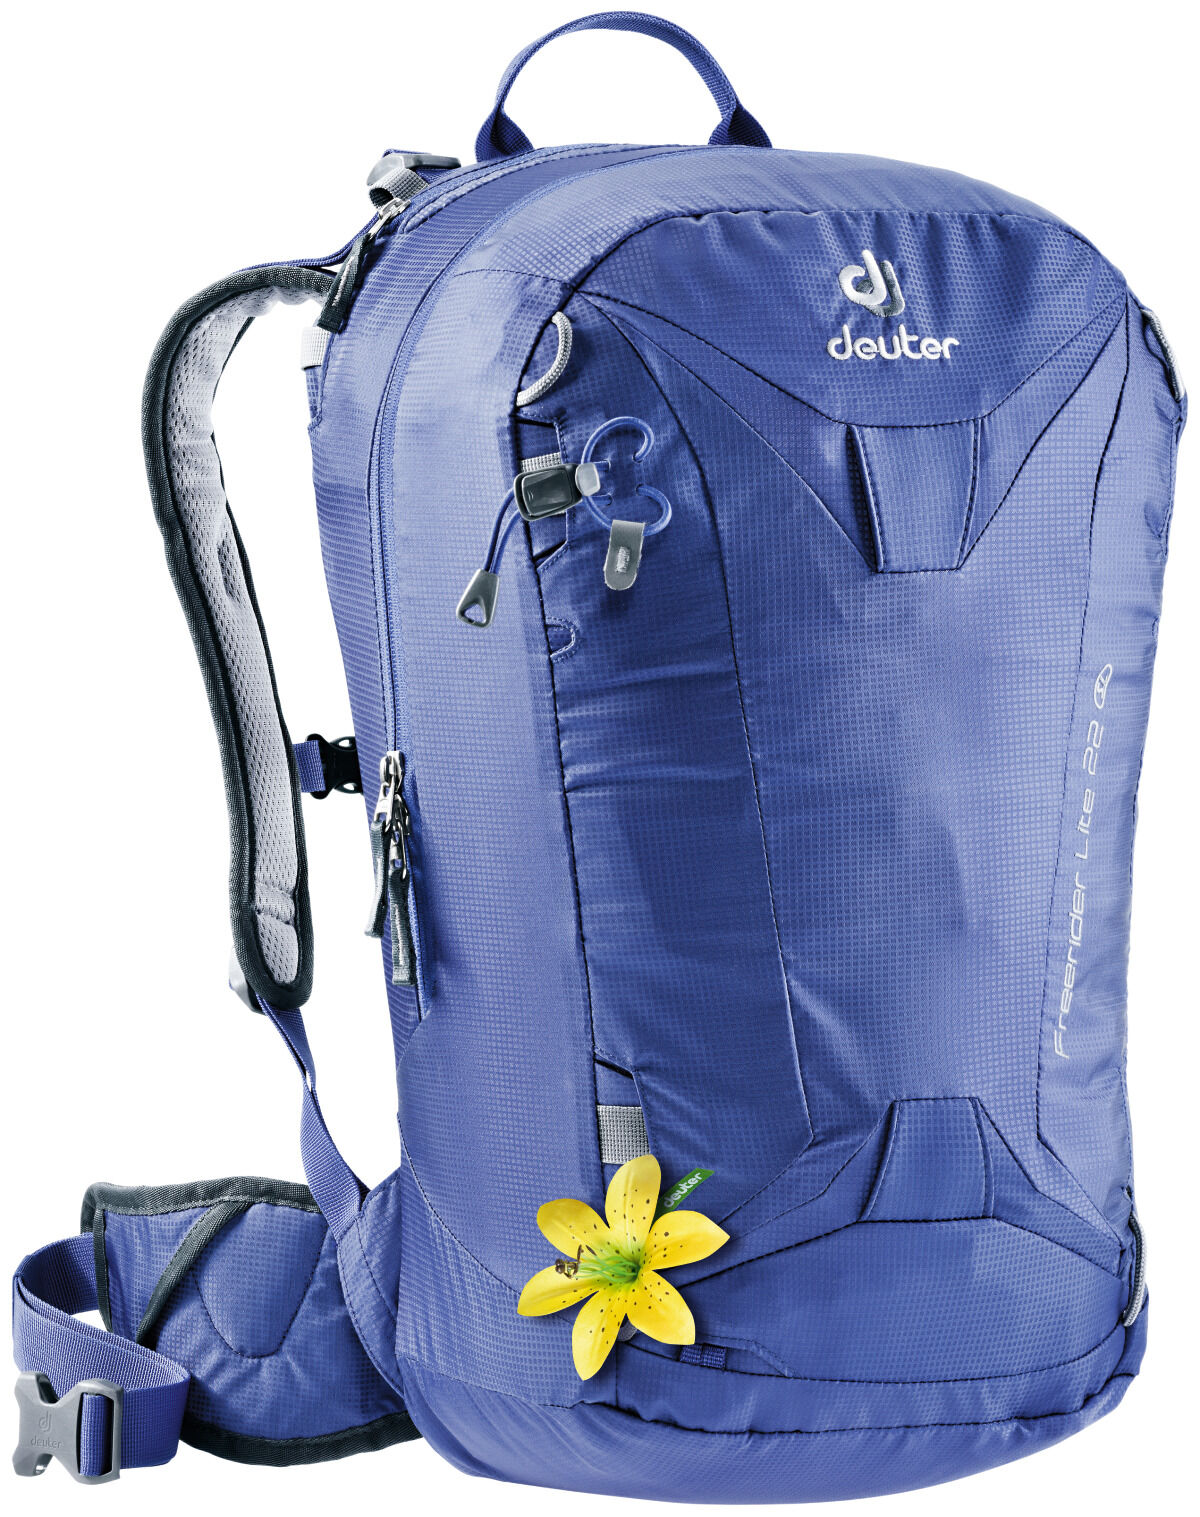 Deuter - Freerider Lite 22 SL - Ski Touring backpack - Women's